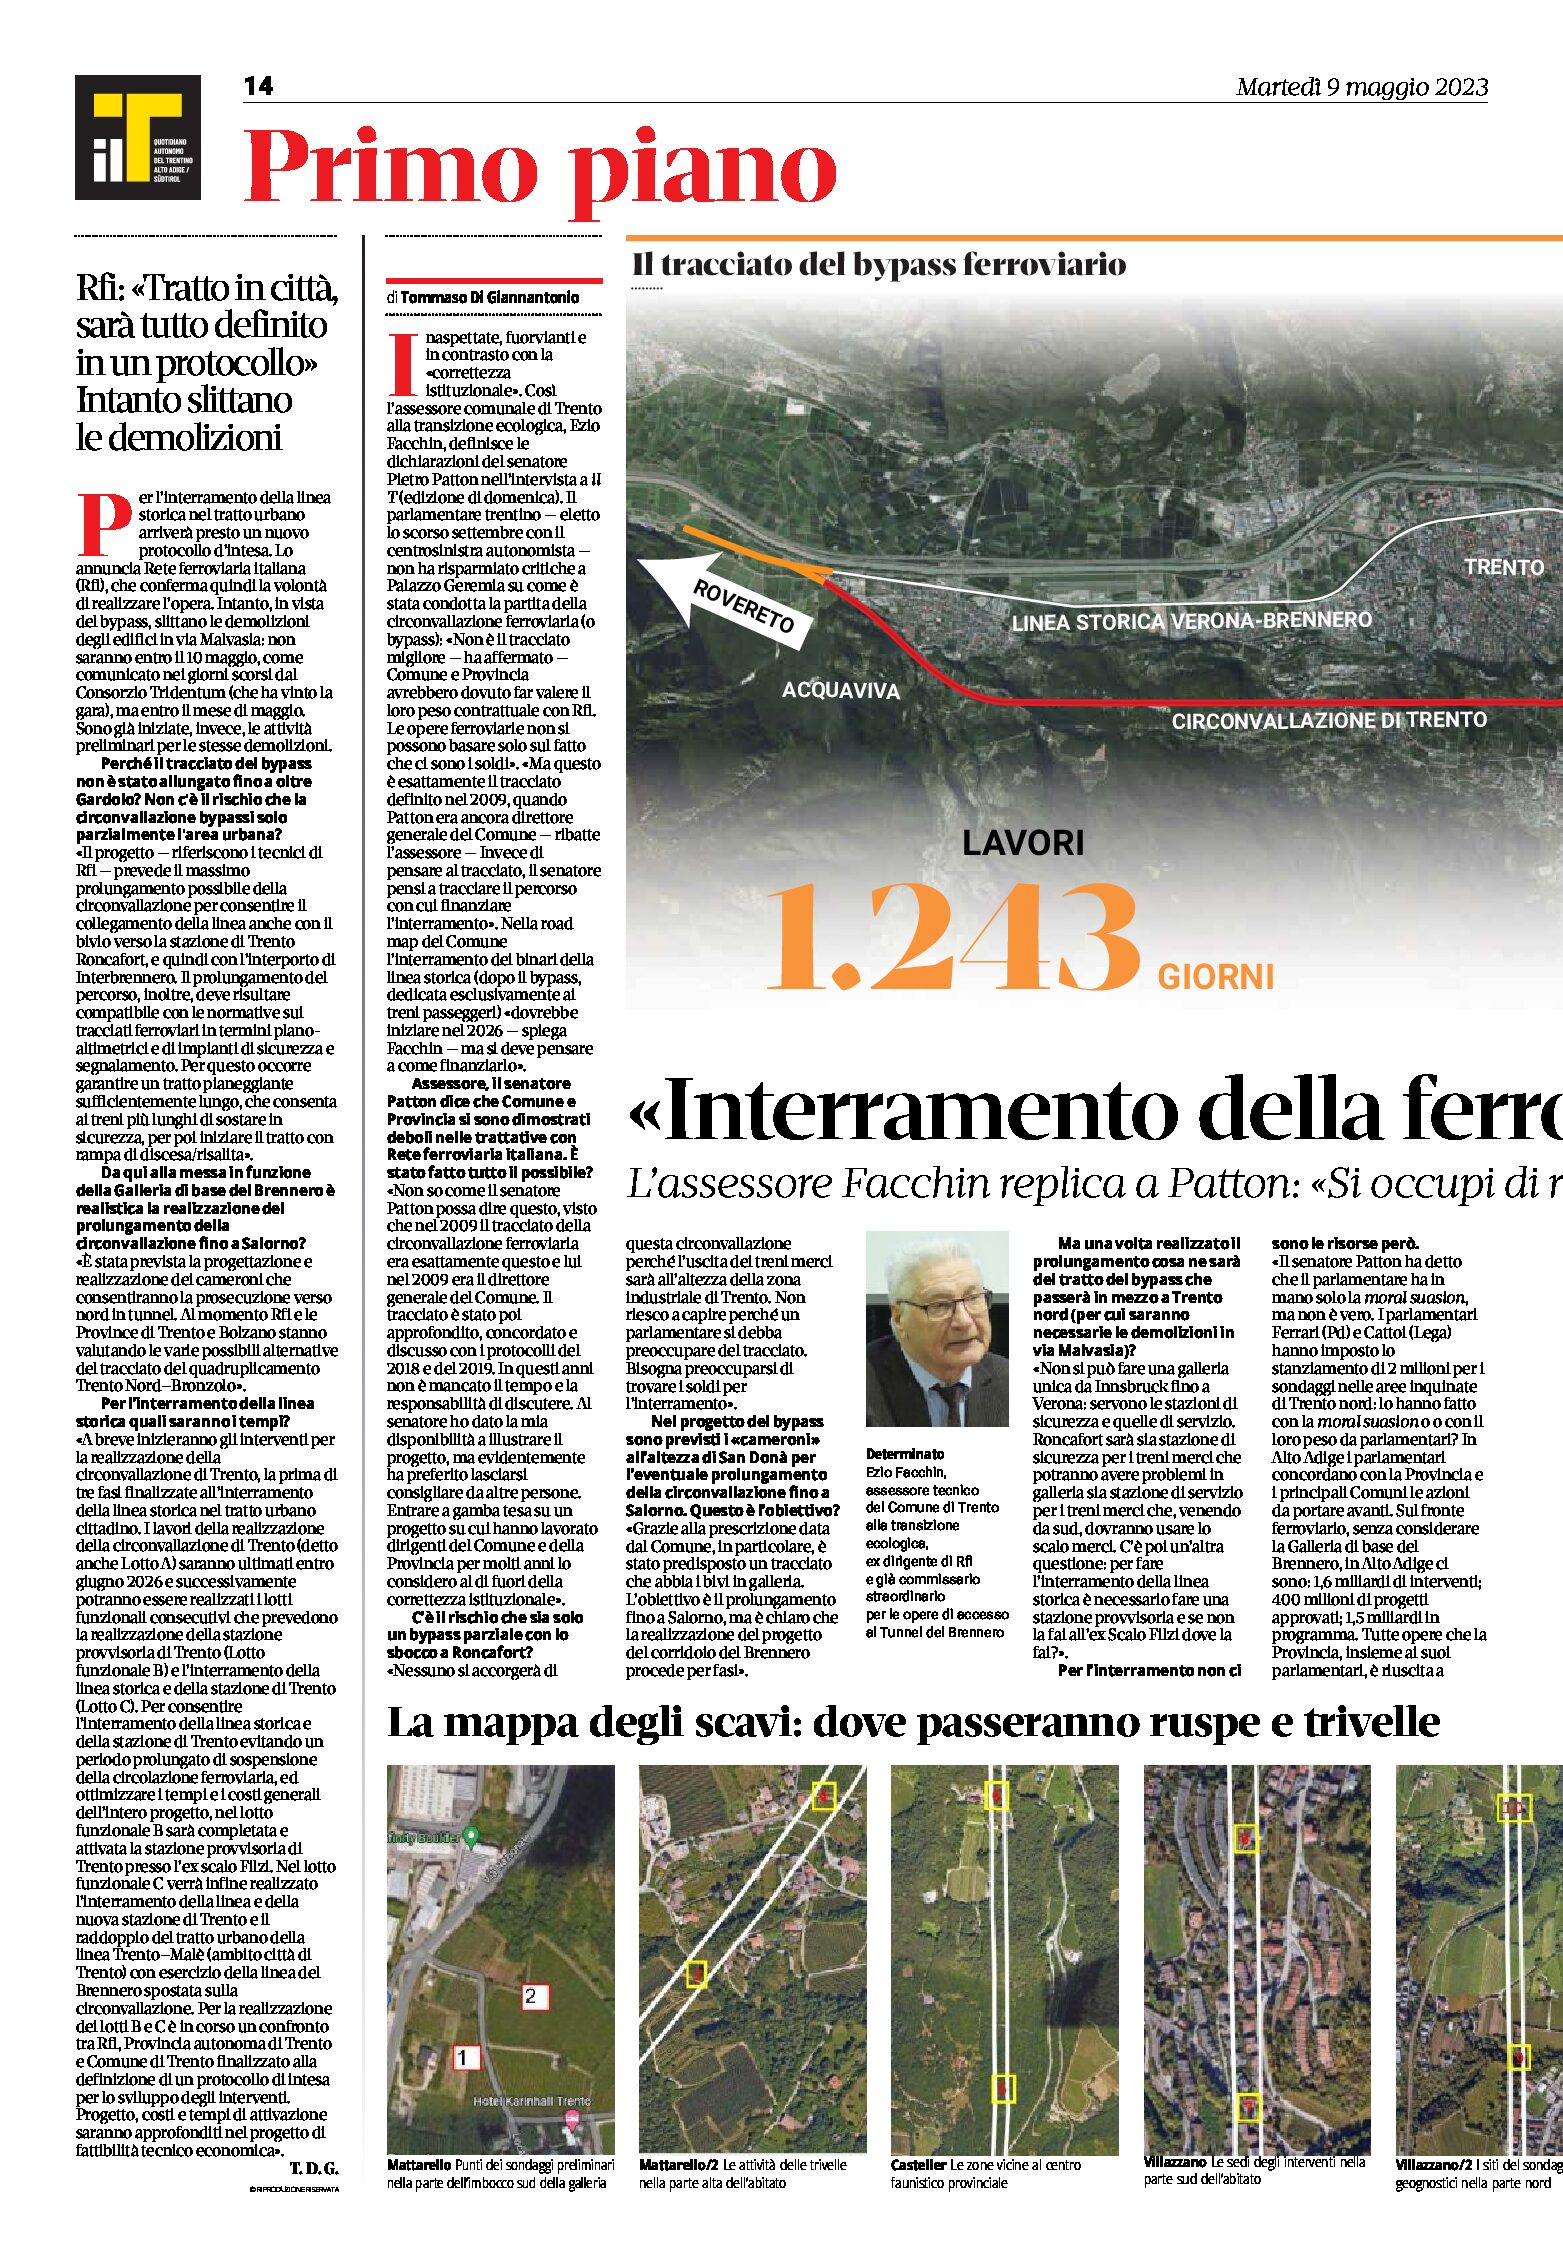 Trento, bypass: interramento della ferrovia dal 2026. Mappa degli scavi. Intervista all’assessore Facchin